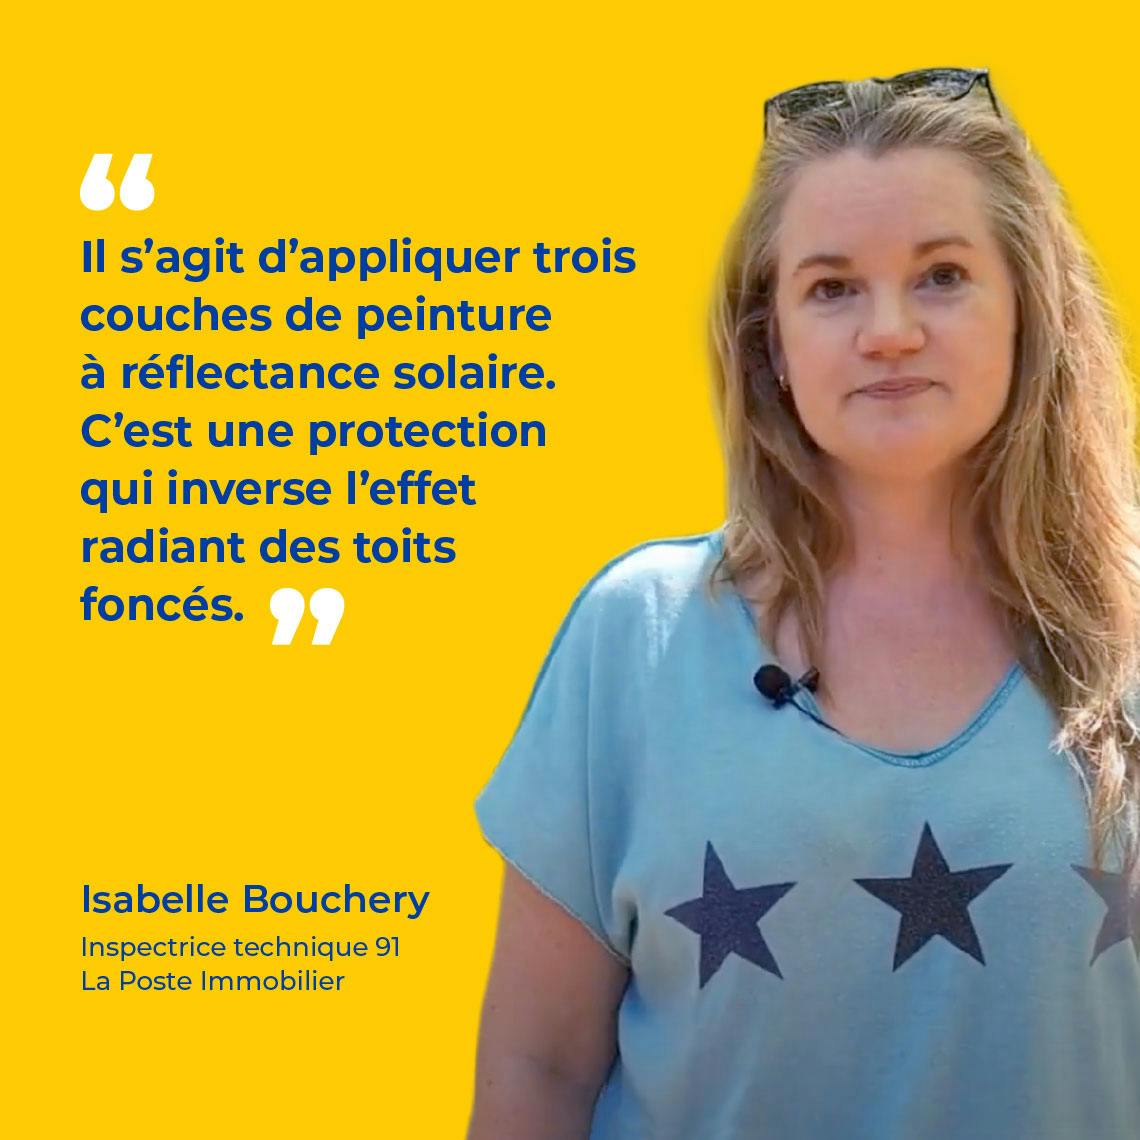 Isabelle Bouchery, Inspectrice technique 91 La Poste Immobilier :"Il s’agit d’appliquer trois couches de peinture à réflectance solaire. C’est une protection qui inverse l’effet radiant des toits foncés."